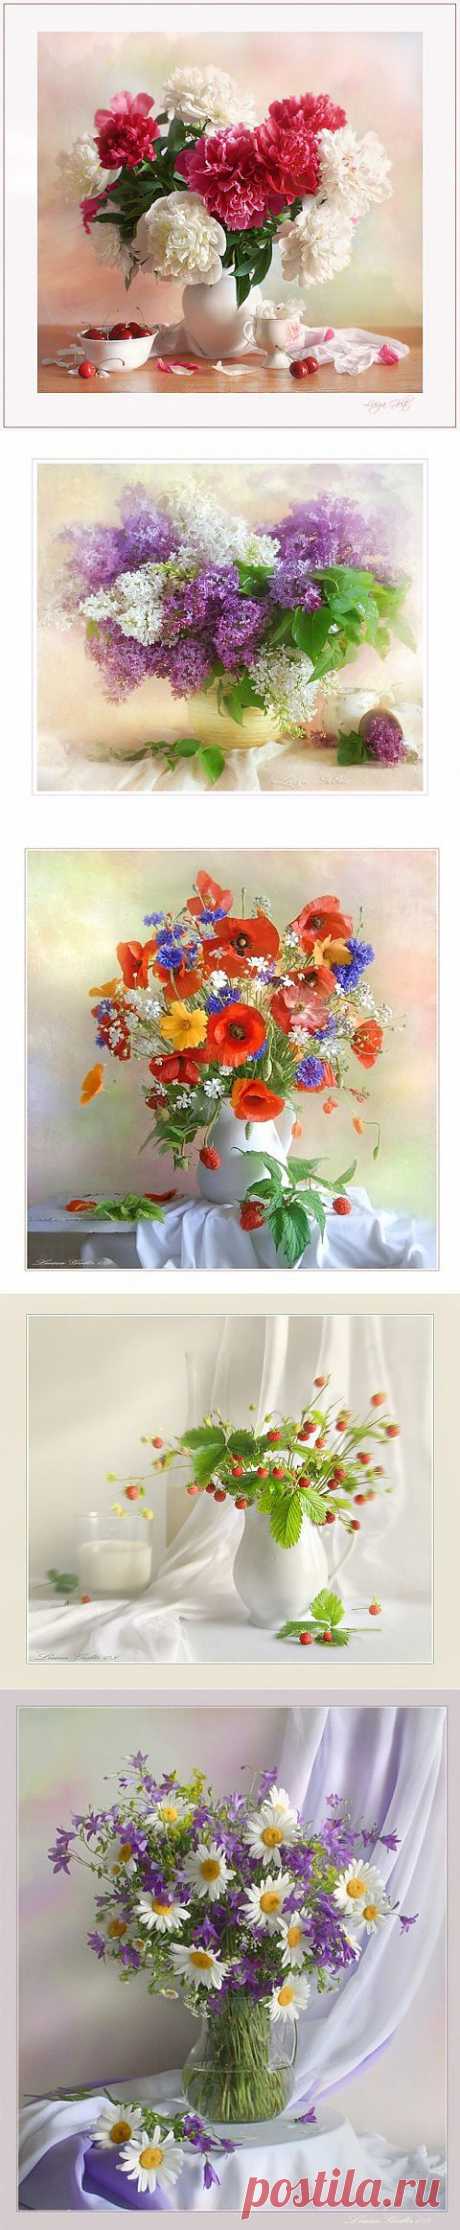 (+1) - Магия цветов в работах Луизы Гельтс | Искусство